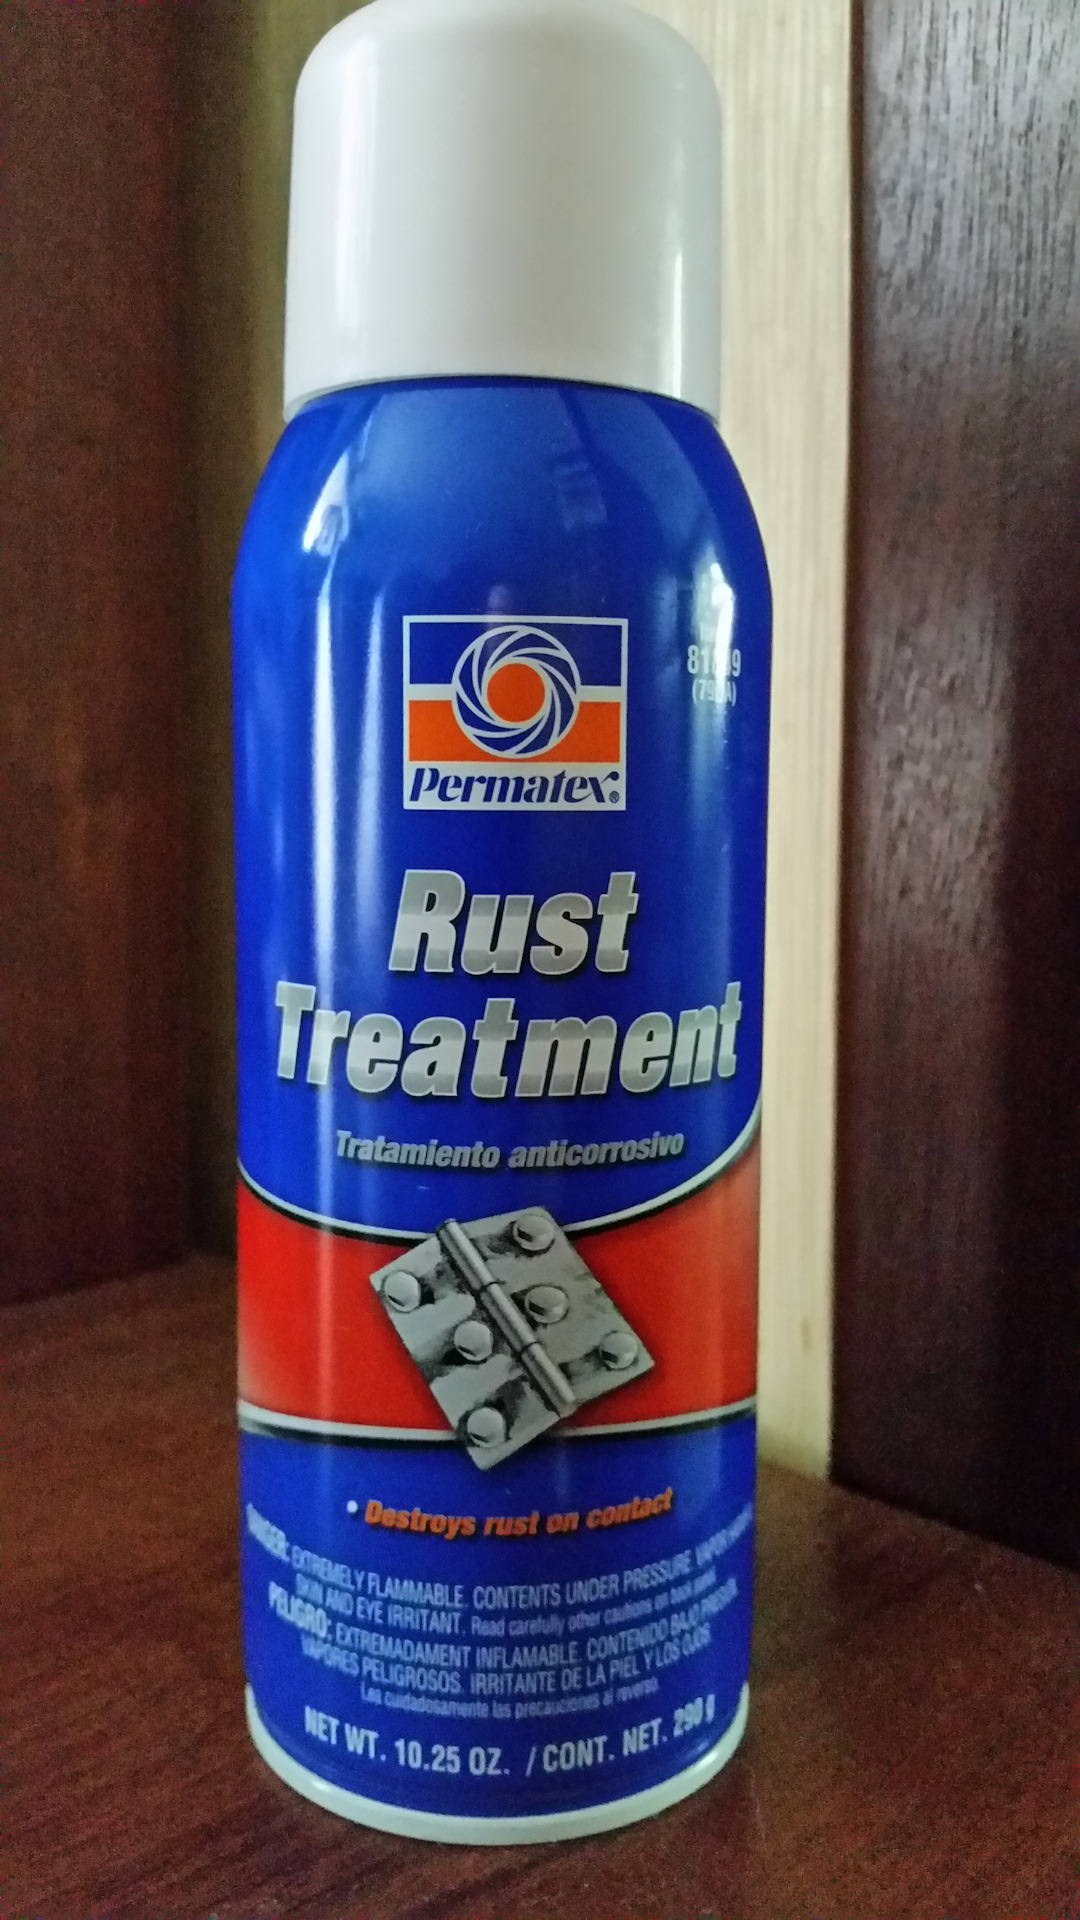 Permatex rust treatment 81849 описание фото 62